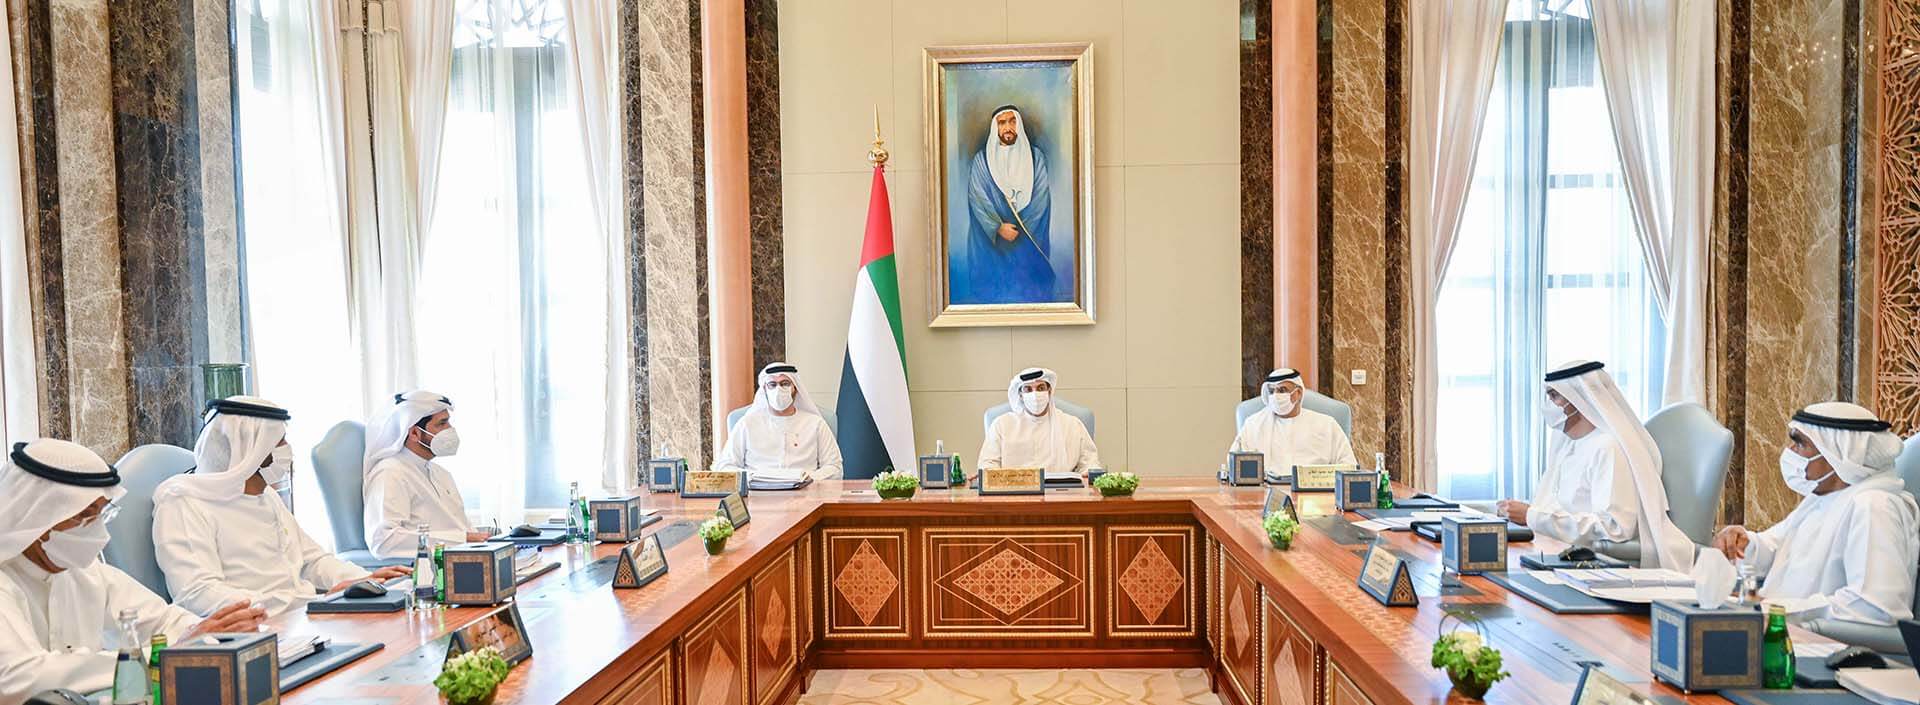 مجلس الوزراء يعتمد قراراً بإعادة تشكيل مجلس إدارة جهاز الإمارات للاستثمار <br>برئاسة منصور بن زايد